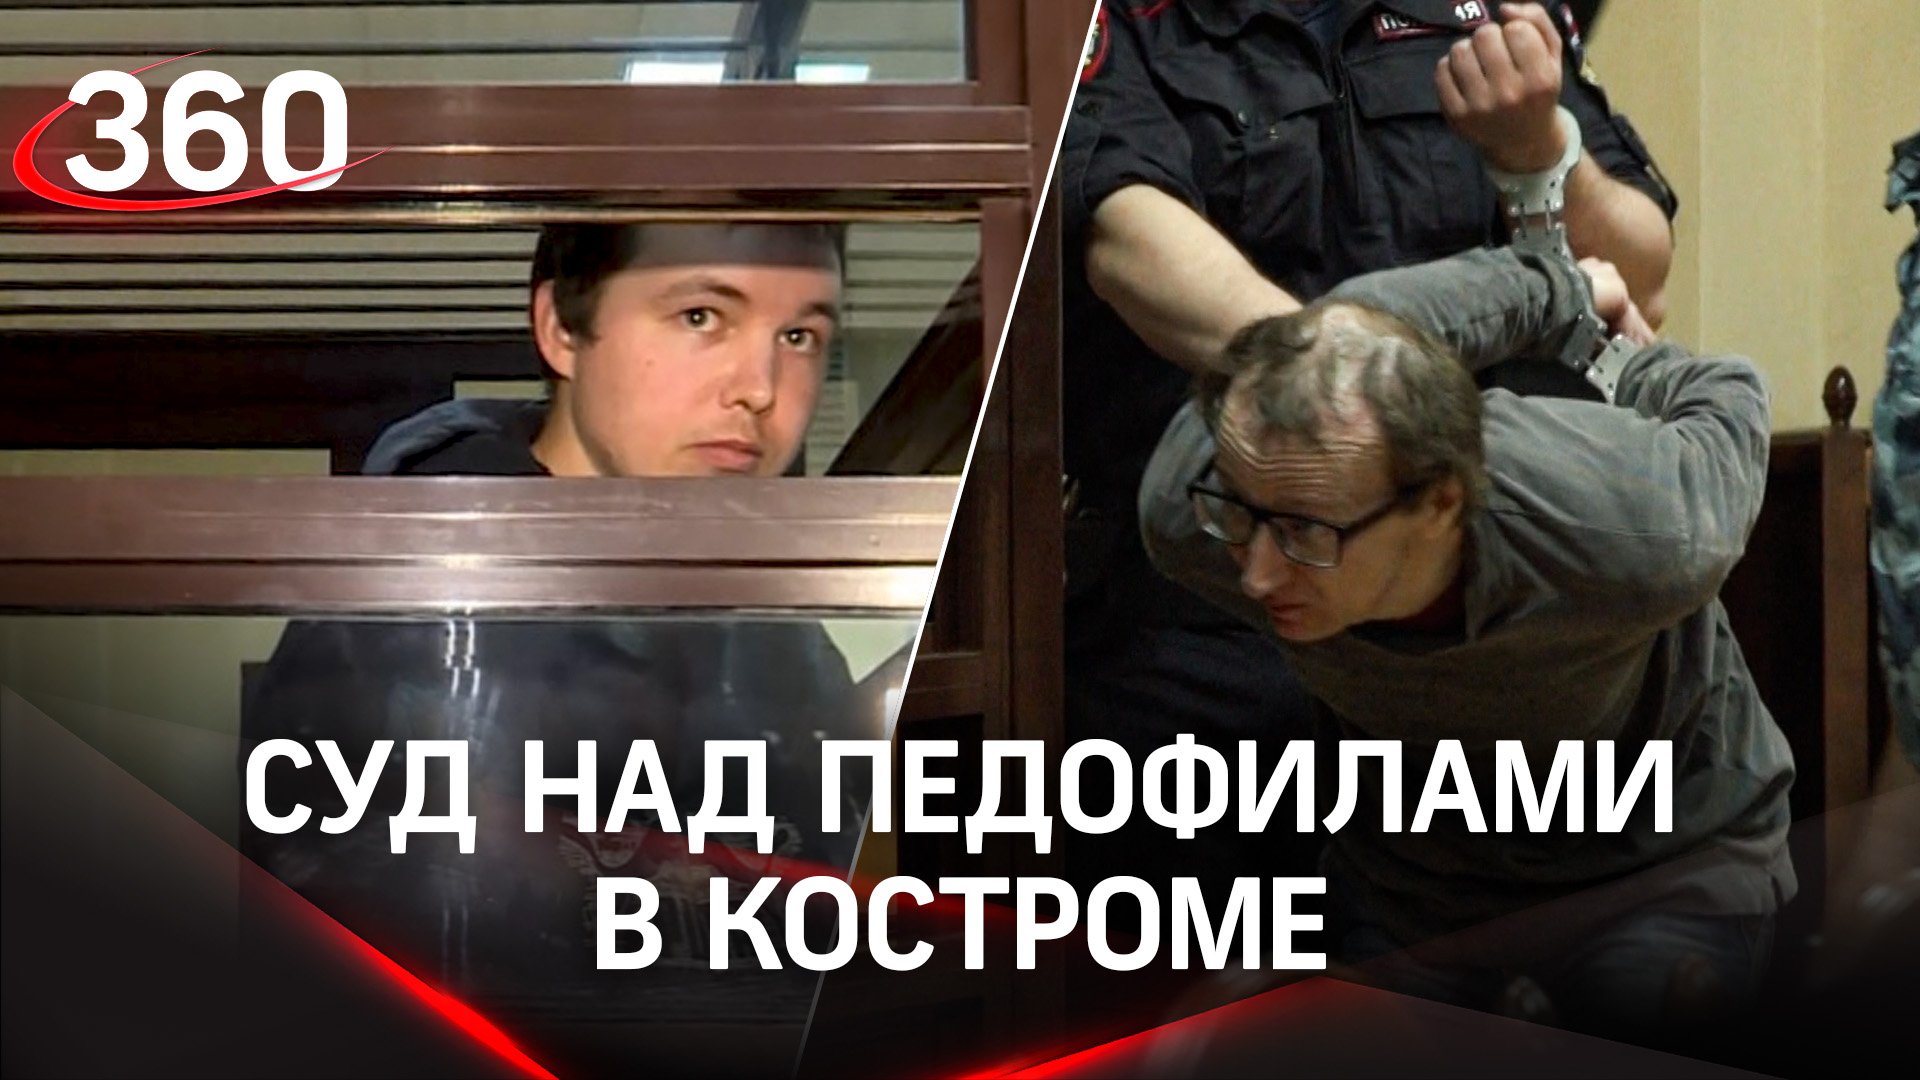 Суд над педофилами в Костроме. Убийцам и насильникам грозит пожизненное